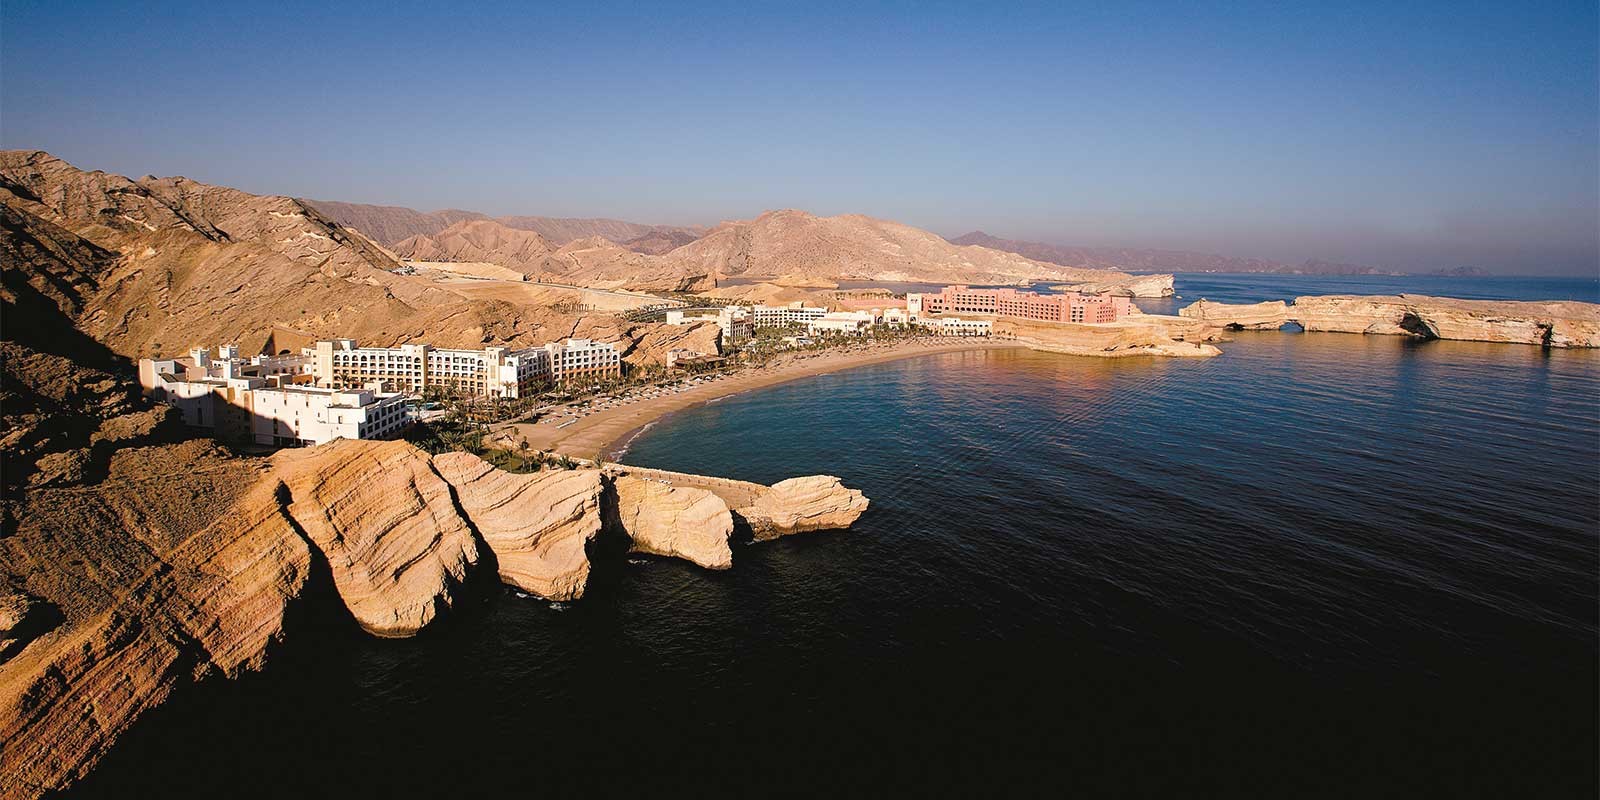 Shangri-La Barr Al Jissah Resort & Spa in Muscat, Oman